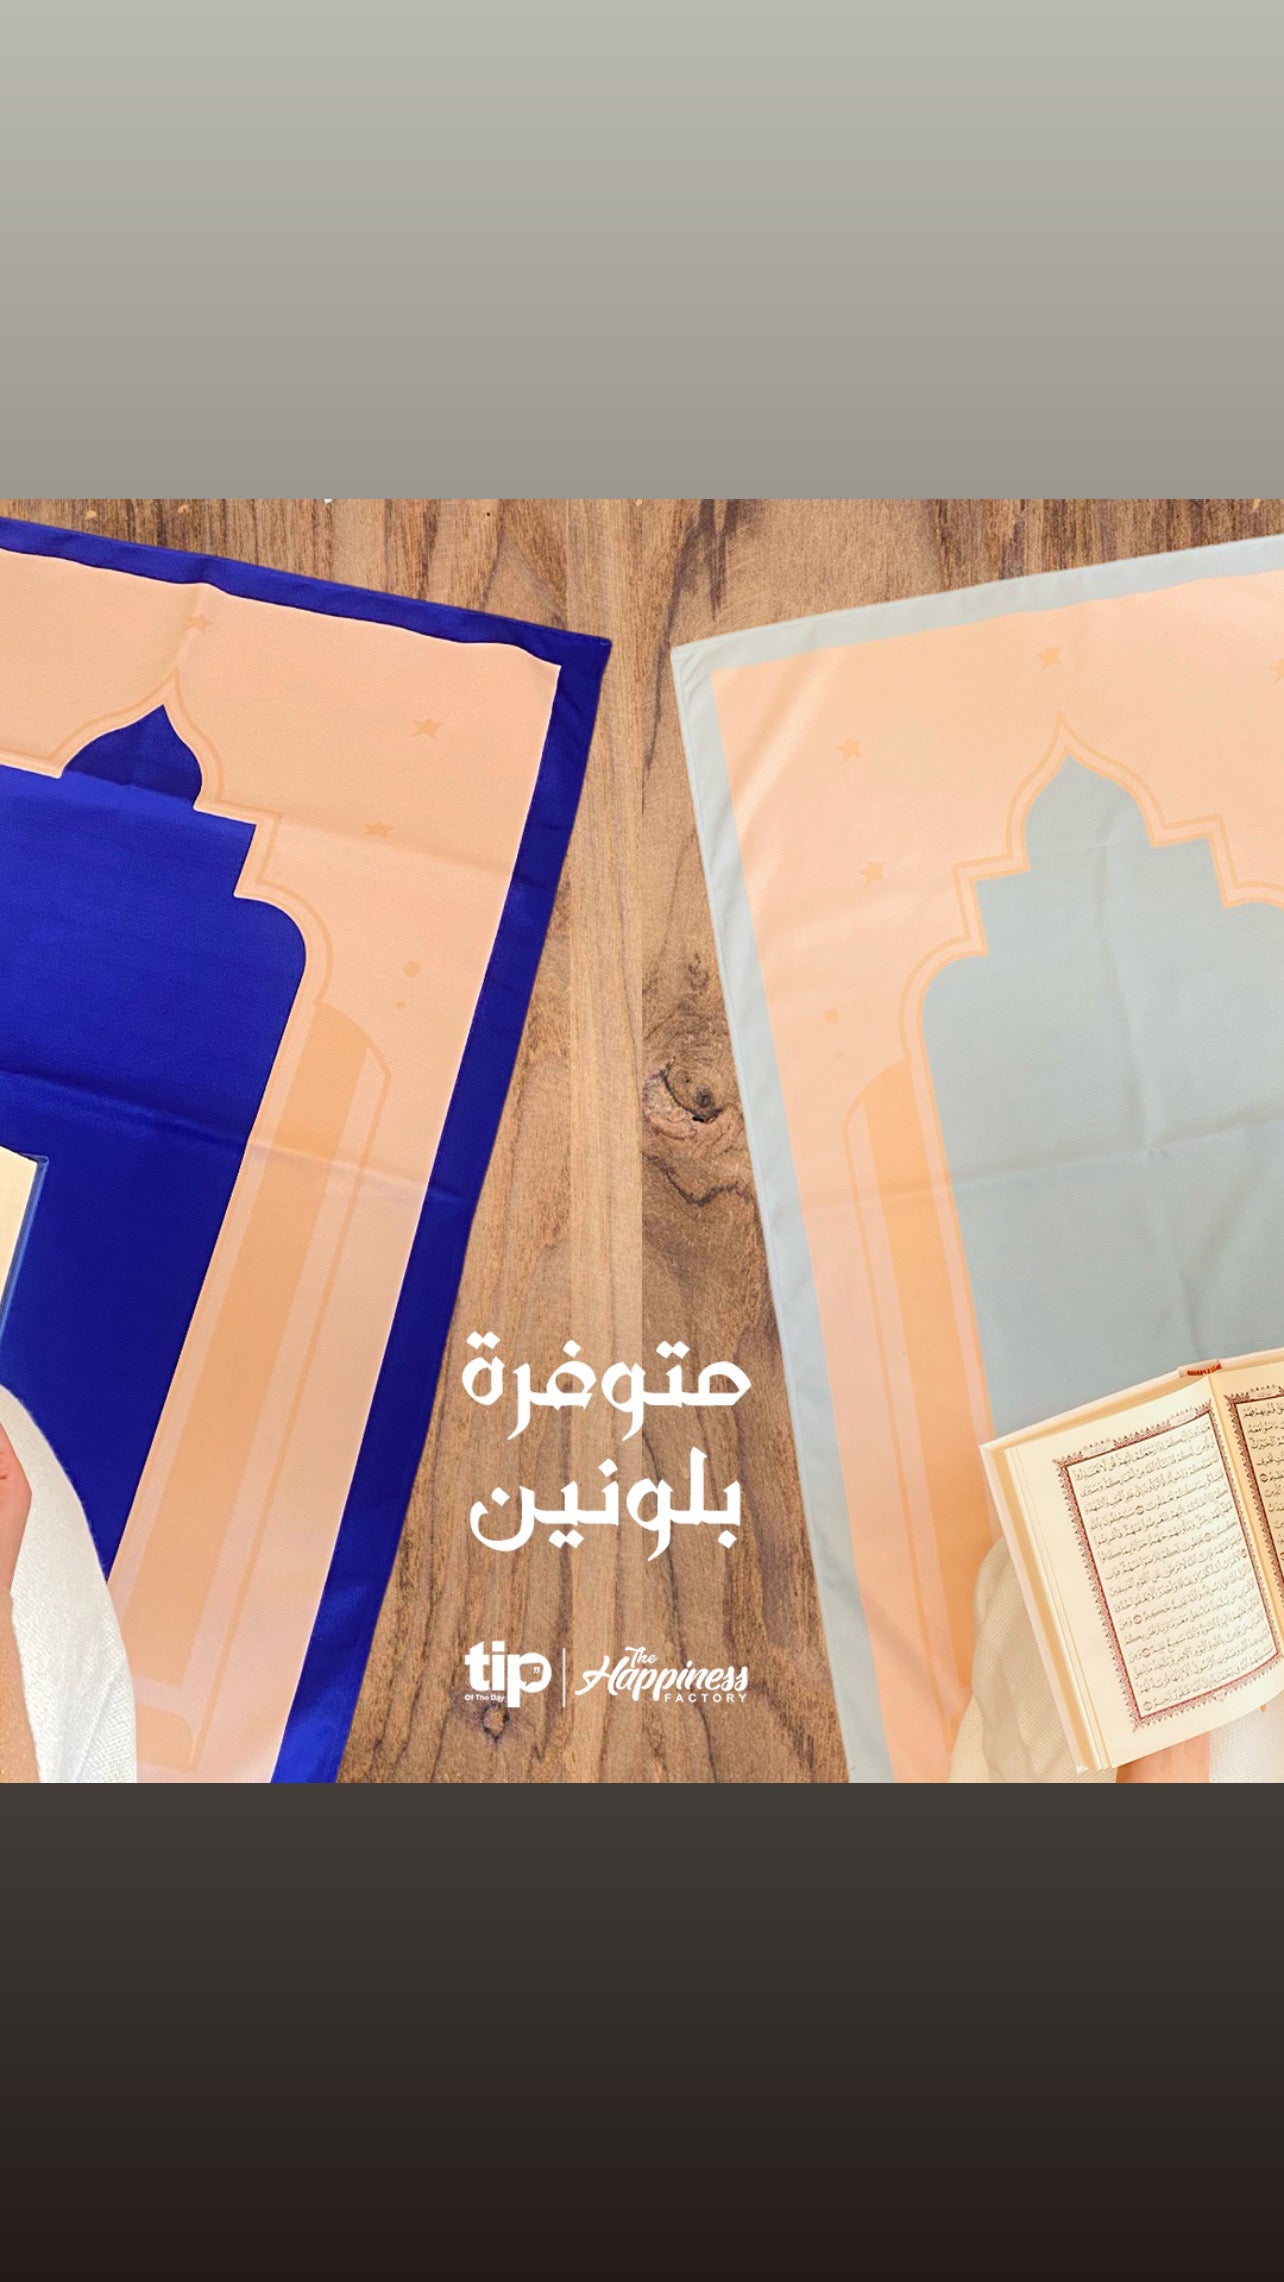 Ahlan Ramadan Box + Prayer Rug 